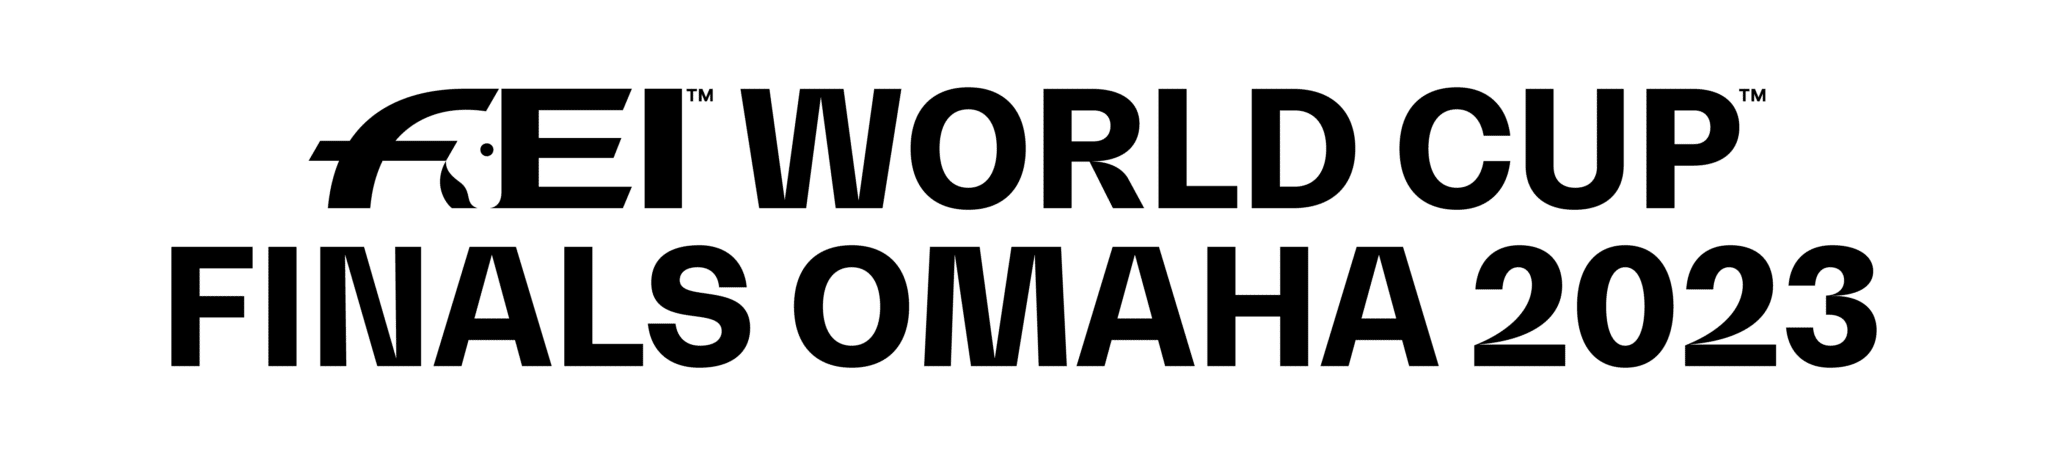 FEI World Cup Finals Omaha 2023 logo